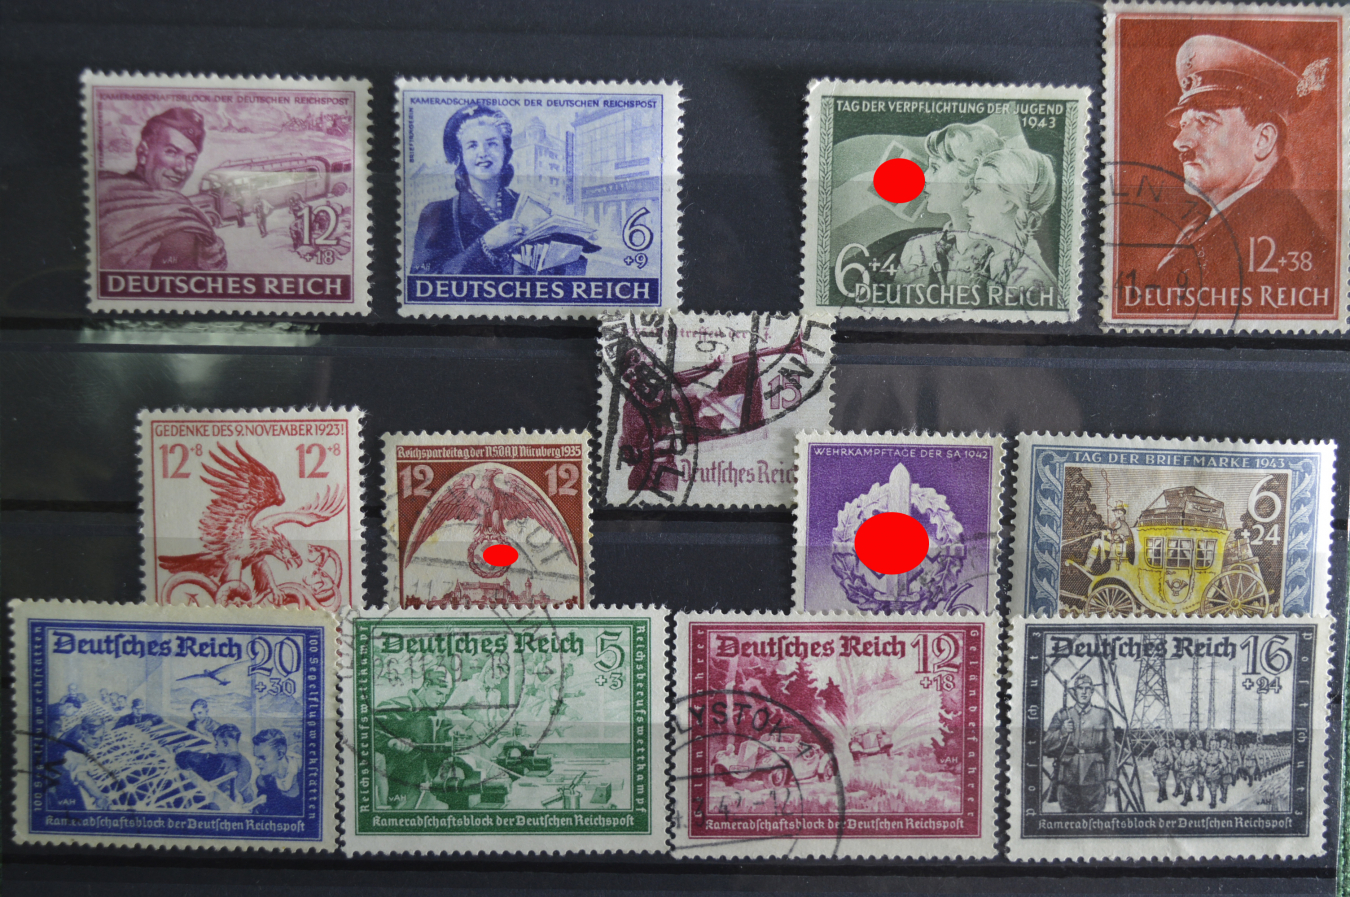 Фашистские марки. Почтовая марка Deutsches Reich. Немецкие почтовые марки третьего рейха. Почтовая марка Deutsches Reich 3. Германия 3- й Рейх 1938 марки.